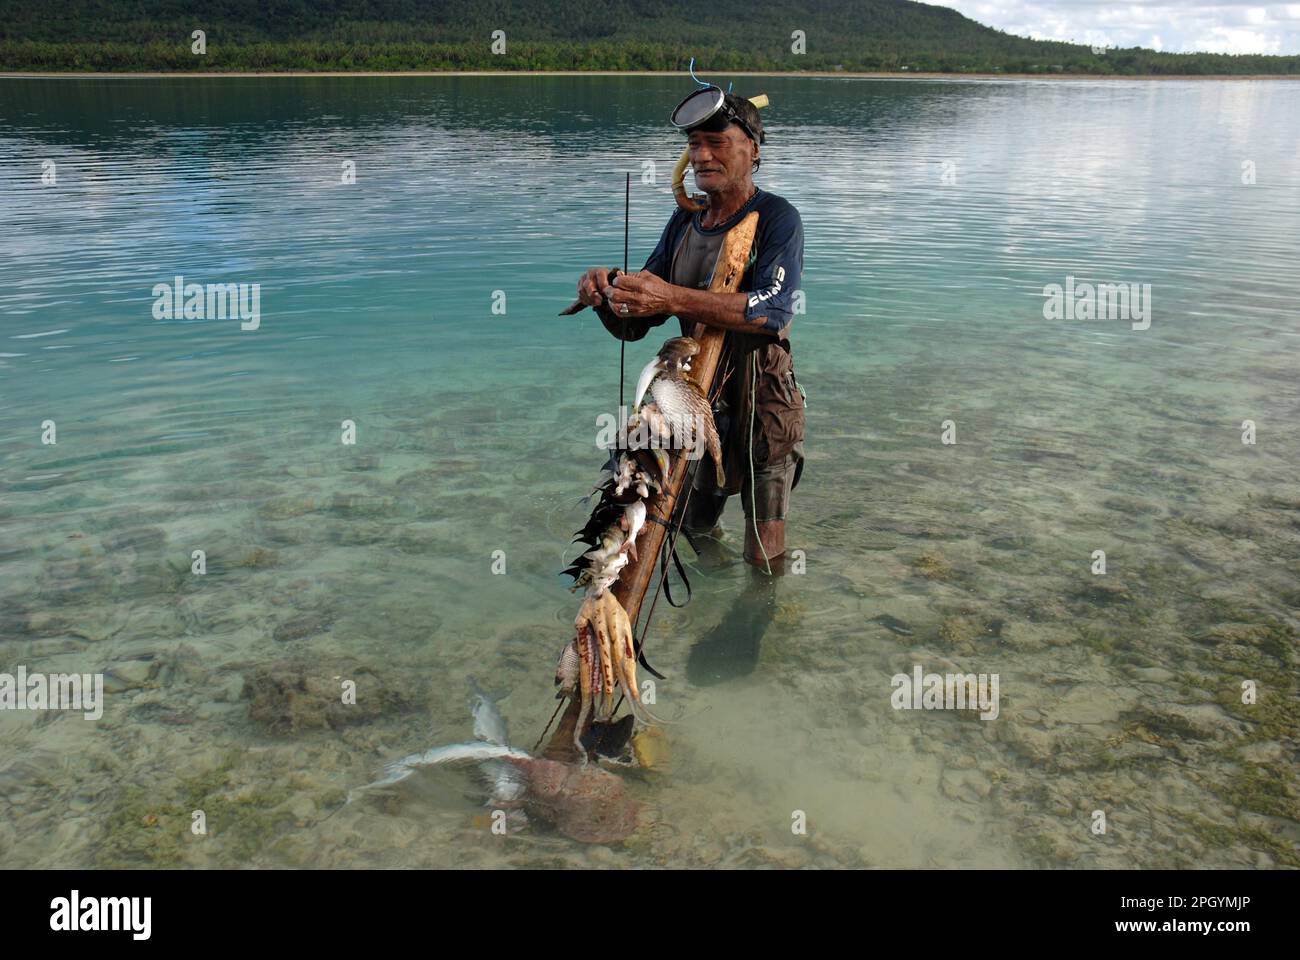 Pescadores submarinos de pie en el mar con capturas de pulpo de arrecife, puercoespines y peces surgeonfish, isla hakautu'utu'u, isla Niuatoputapu, Tonga Foto de stock